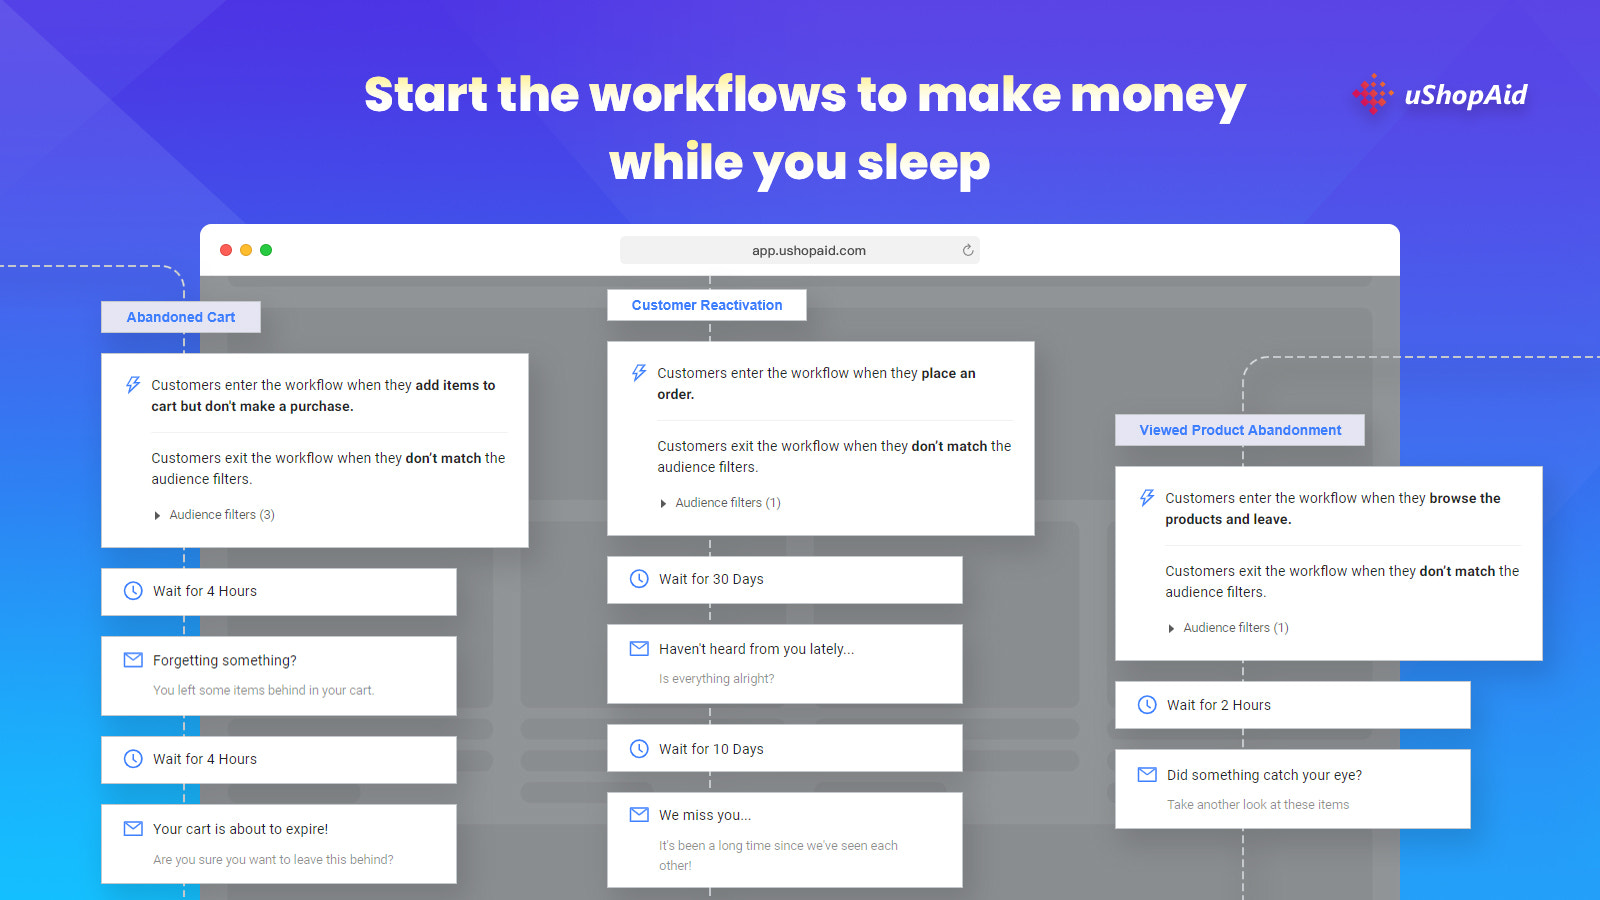 Démarrez les workflows pour gagner de l'argent pendant que vous dormez